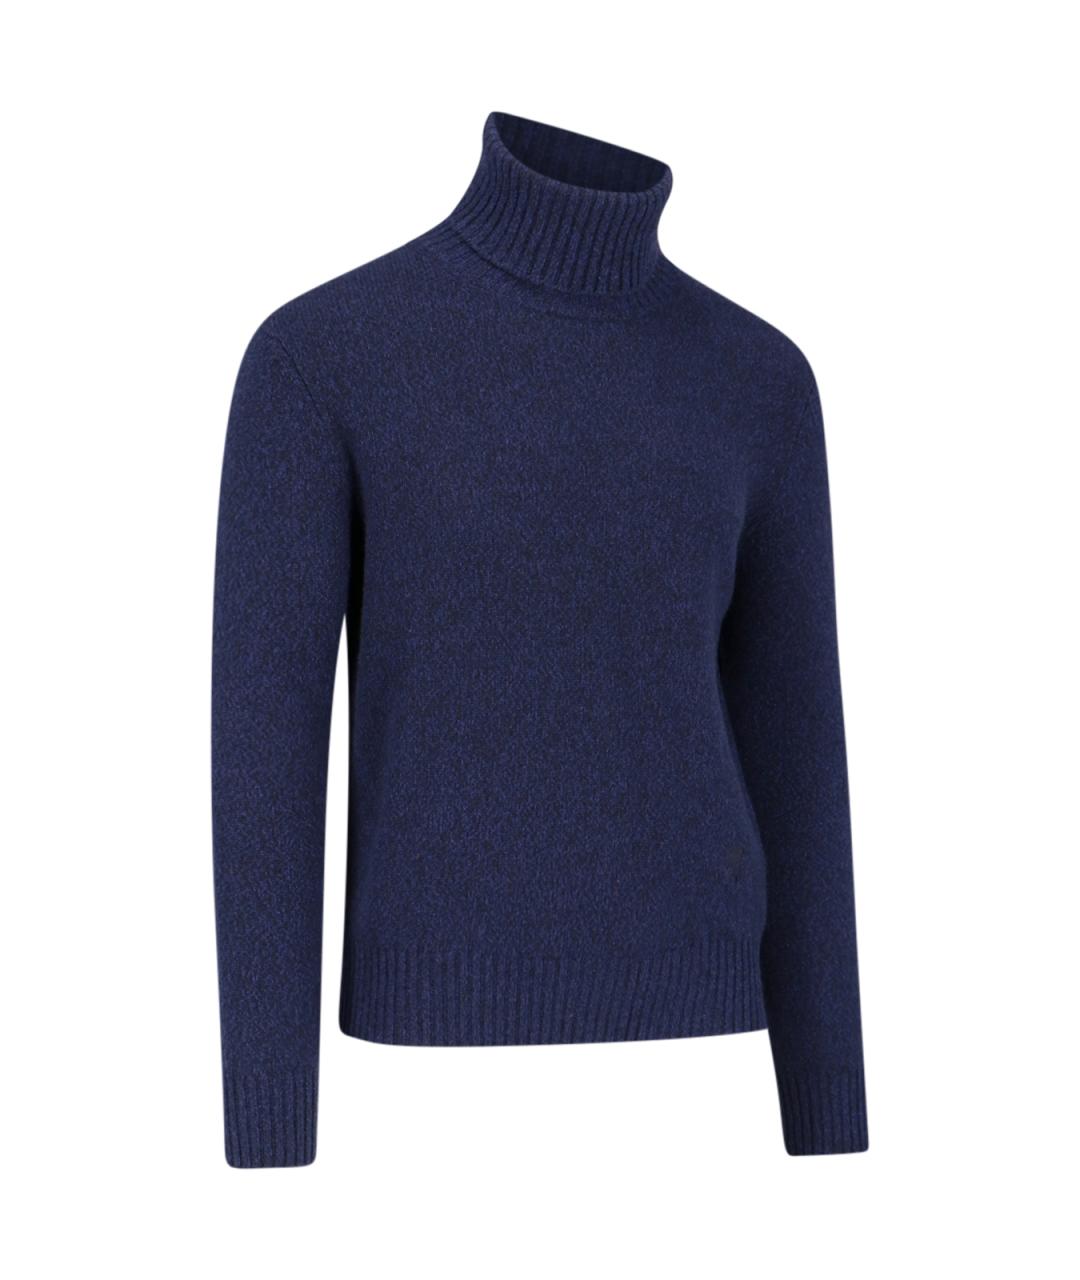 AMI Синий кашемировый джемпер / свитер, фото 2